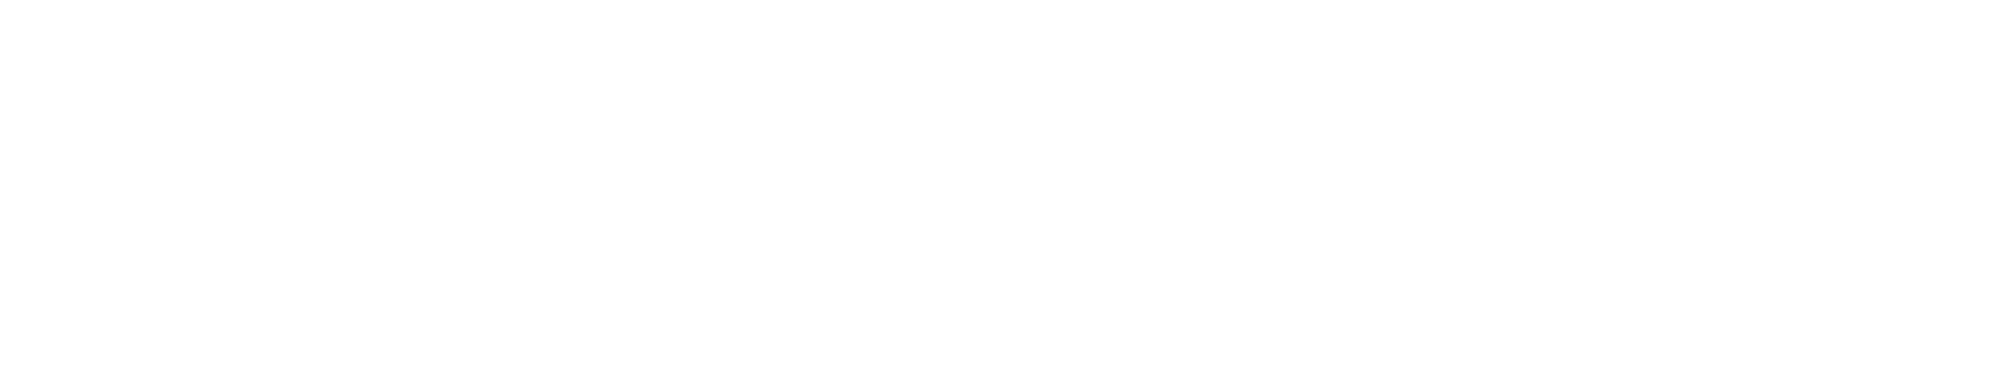 Wilde Waters logo